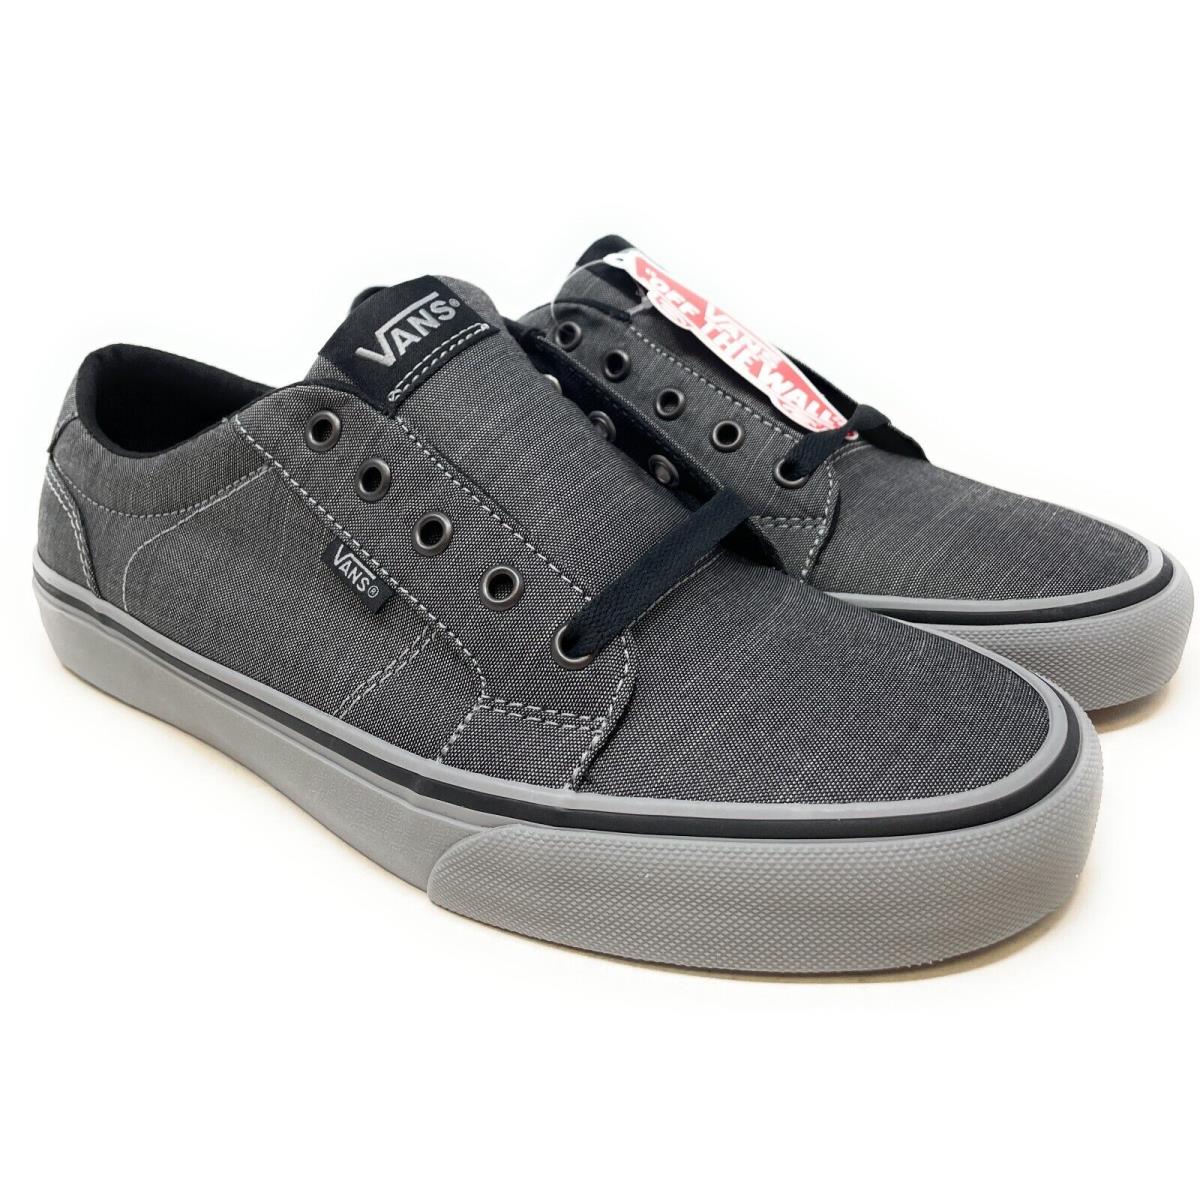 Vans Mens Bishop Skateboarding Shoes F14 Textile Black/grey